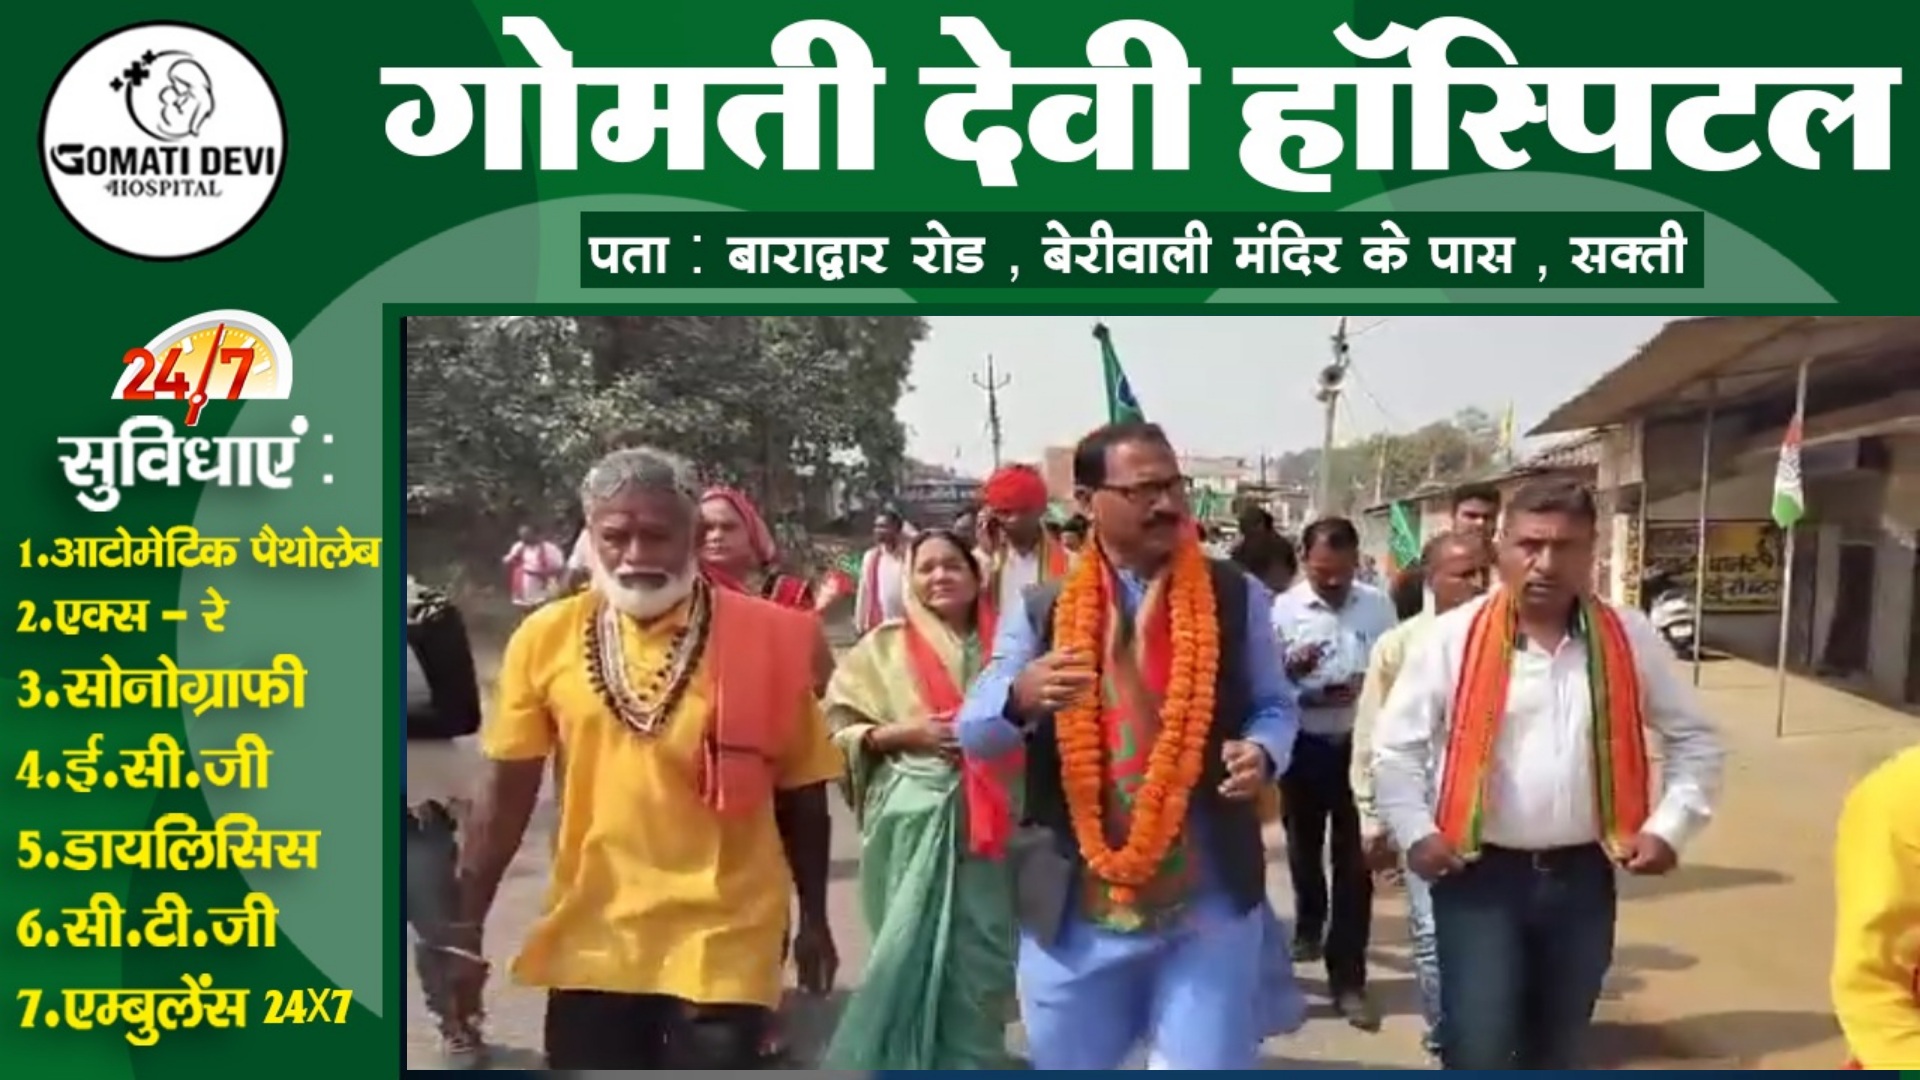 आखिर भाजपा प्रत्याशी कृष्णकांत चंद्रा क्यों बने है जैजैपुर के मतदाताओं की पहली पसंद , पढ़े पूरी खबर 